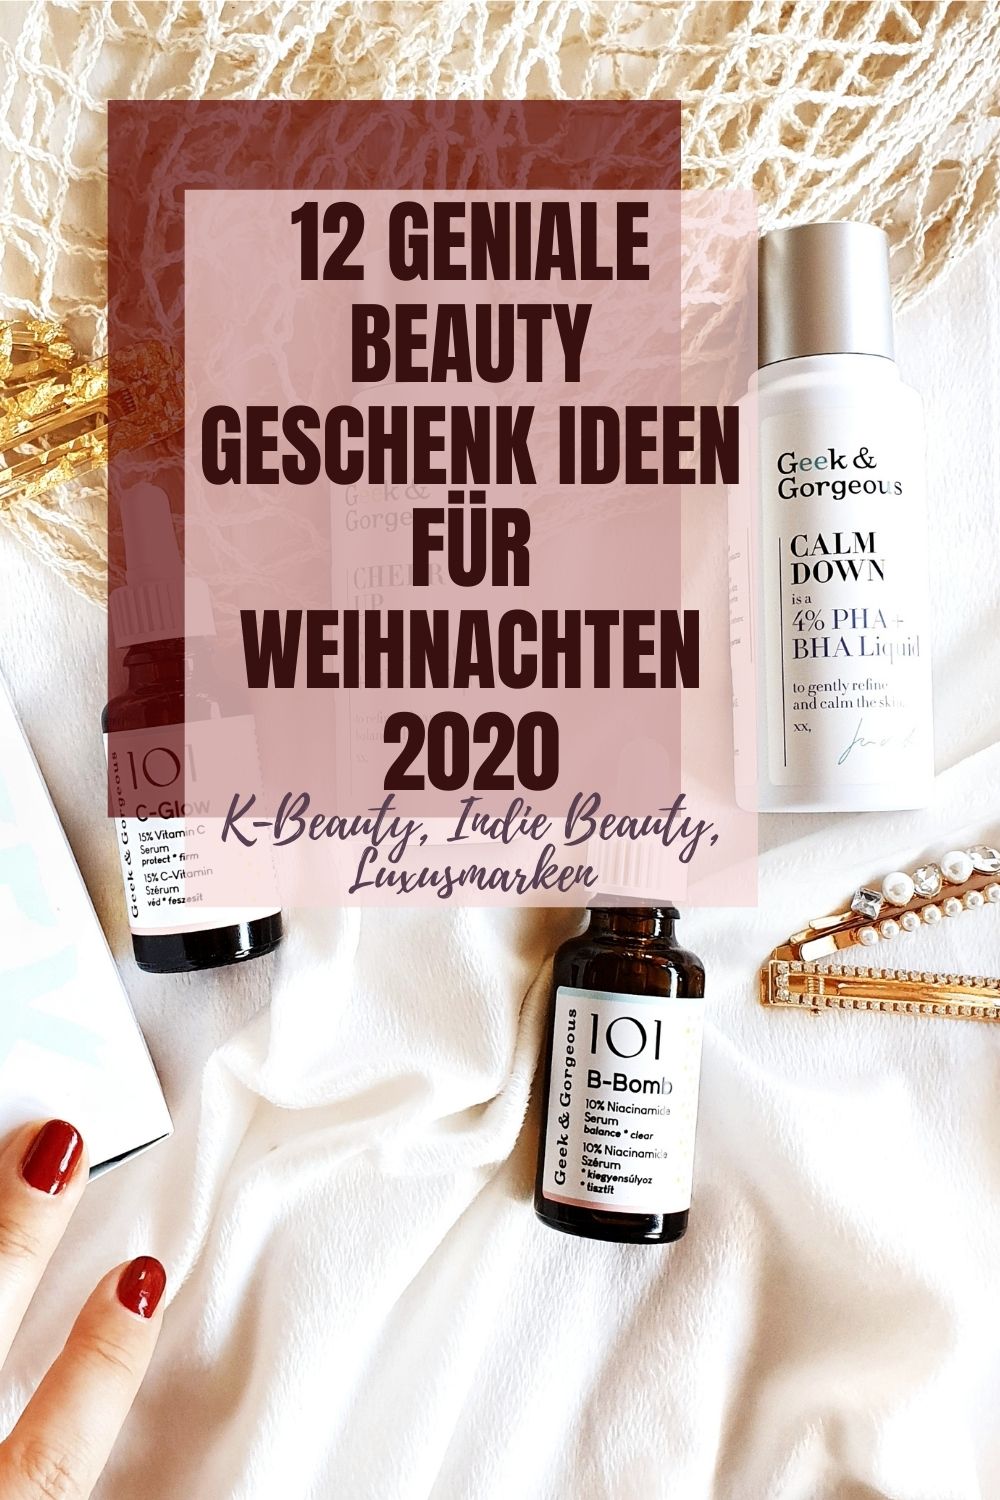 12 Geniale Beauty Geschenk Ideen für Weihnachten 2020